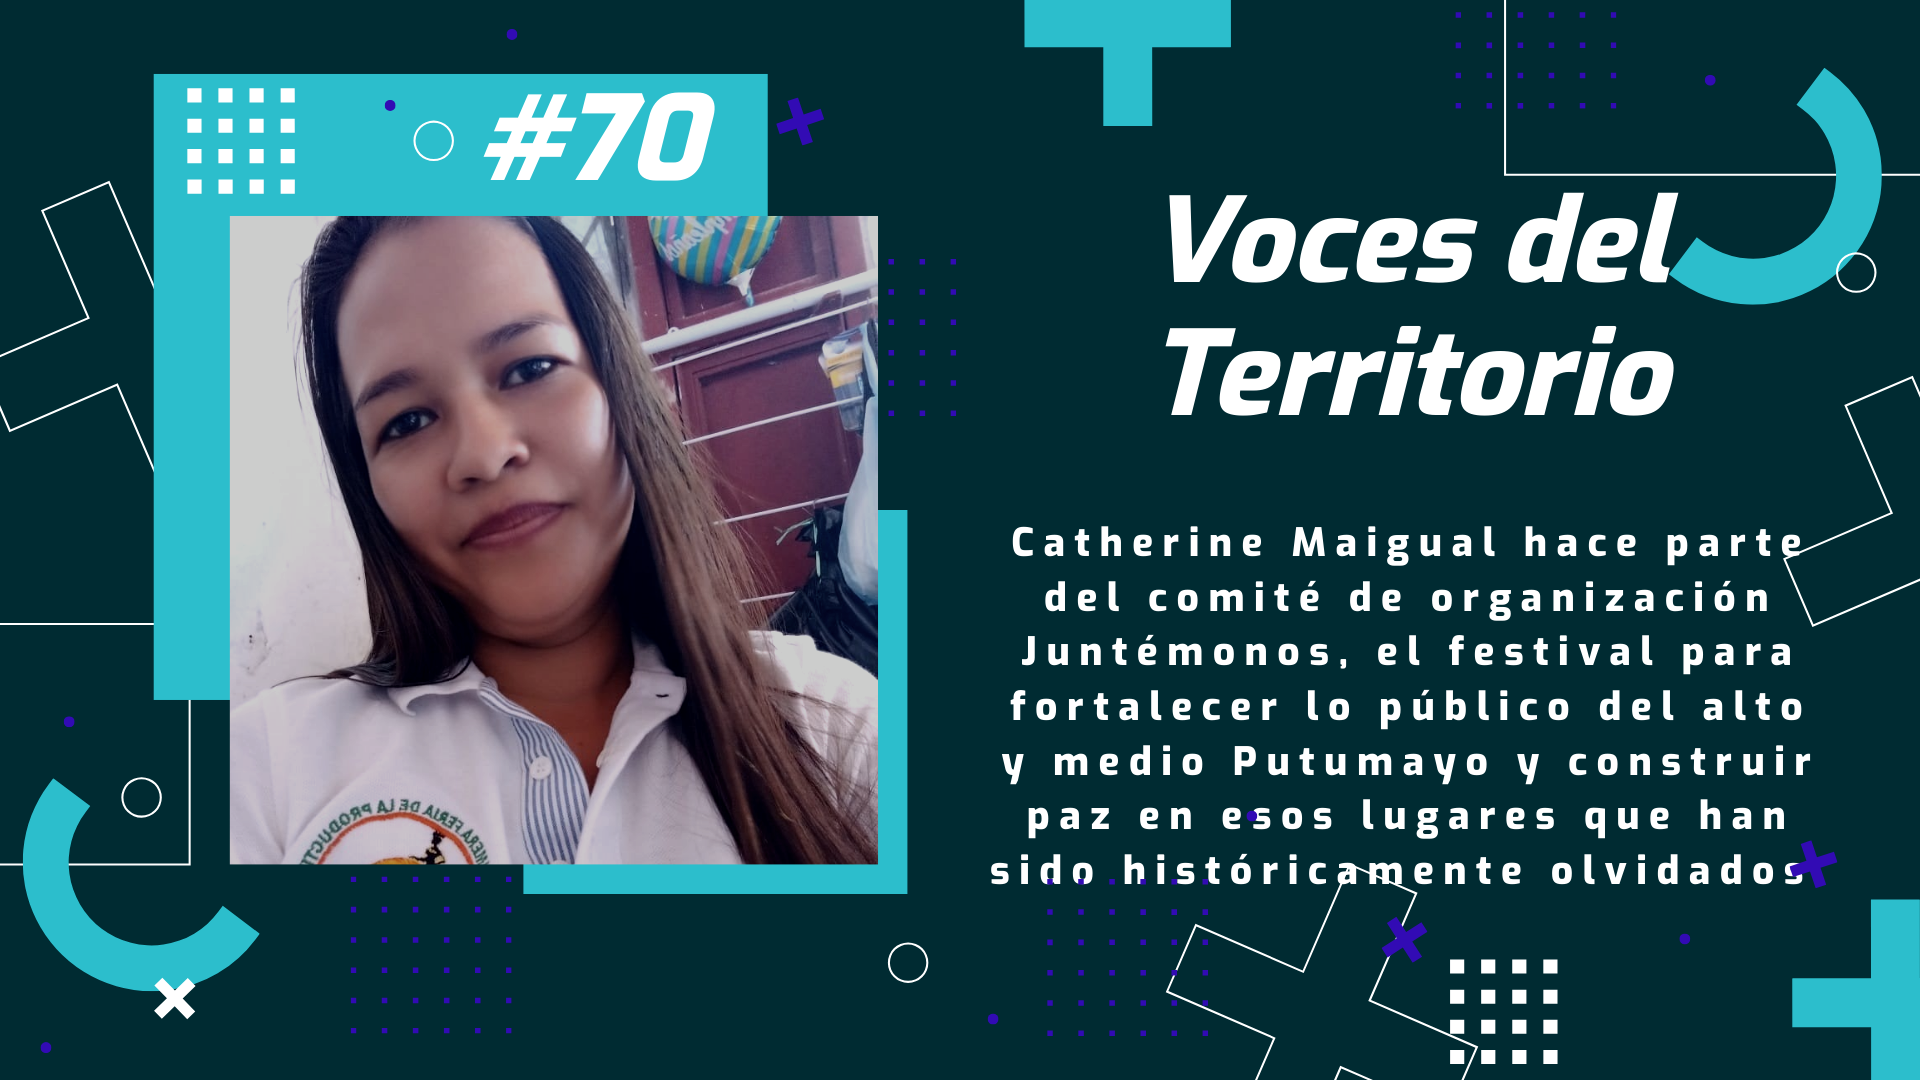 Voces del Territorio #70 “Juntémonos” un festival para fortalecer lo público en el Putumayo